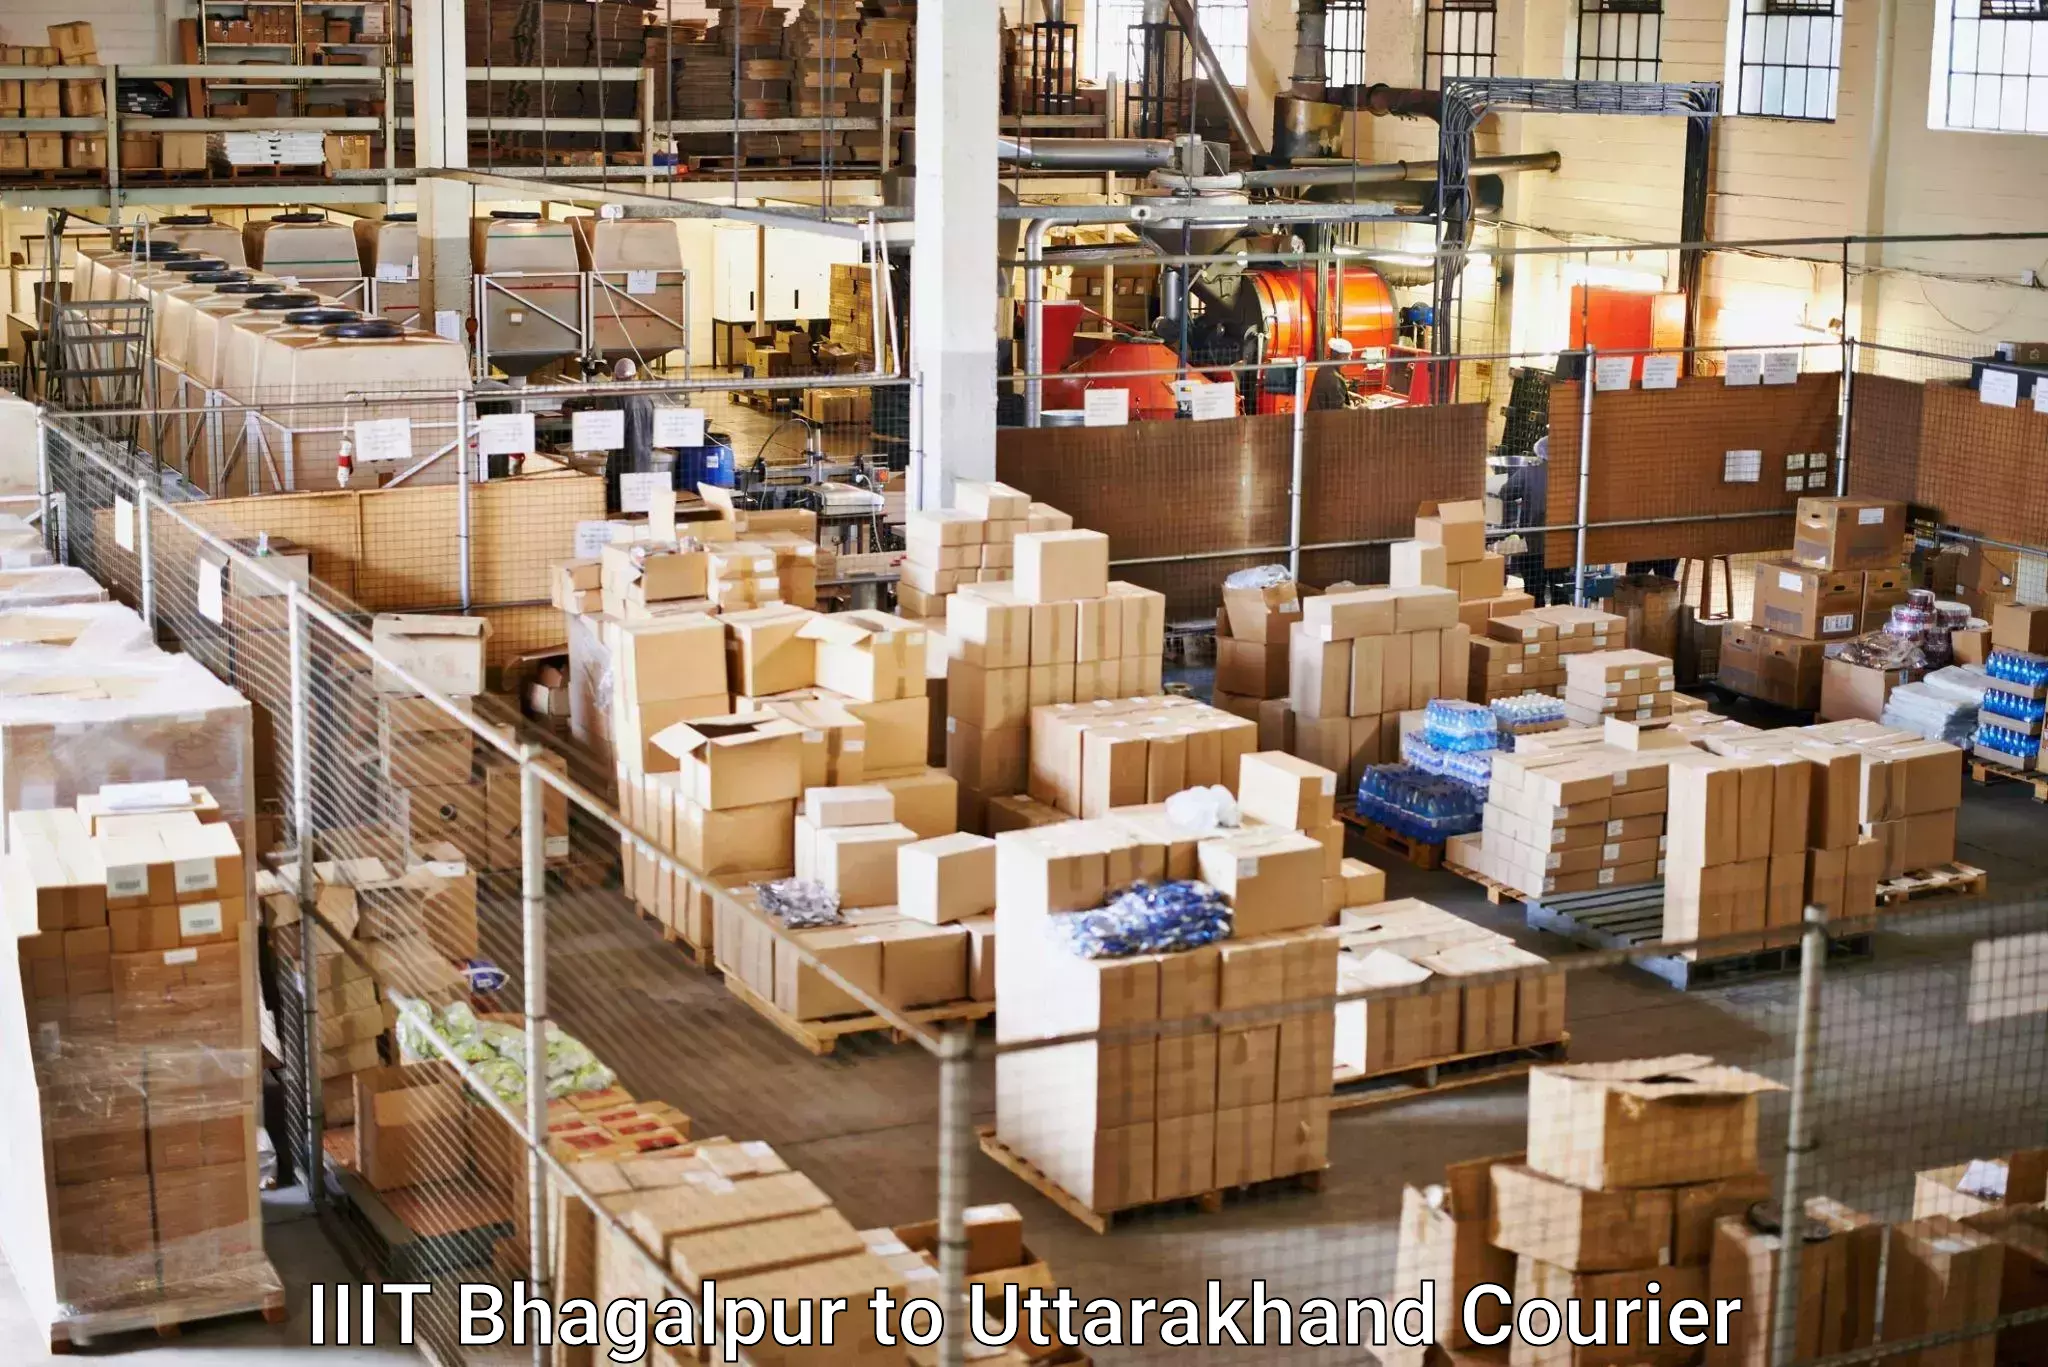 Doorstep delivery service IIIT Bhagalpur to IIT Roorkee